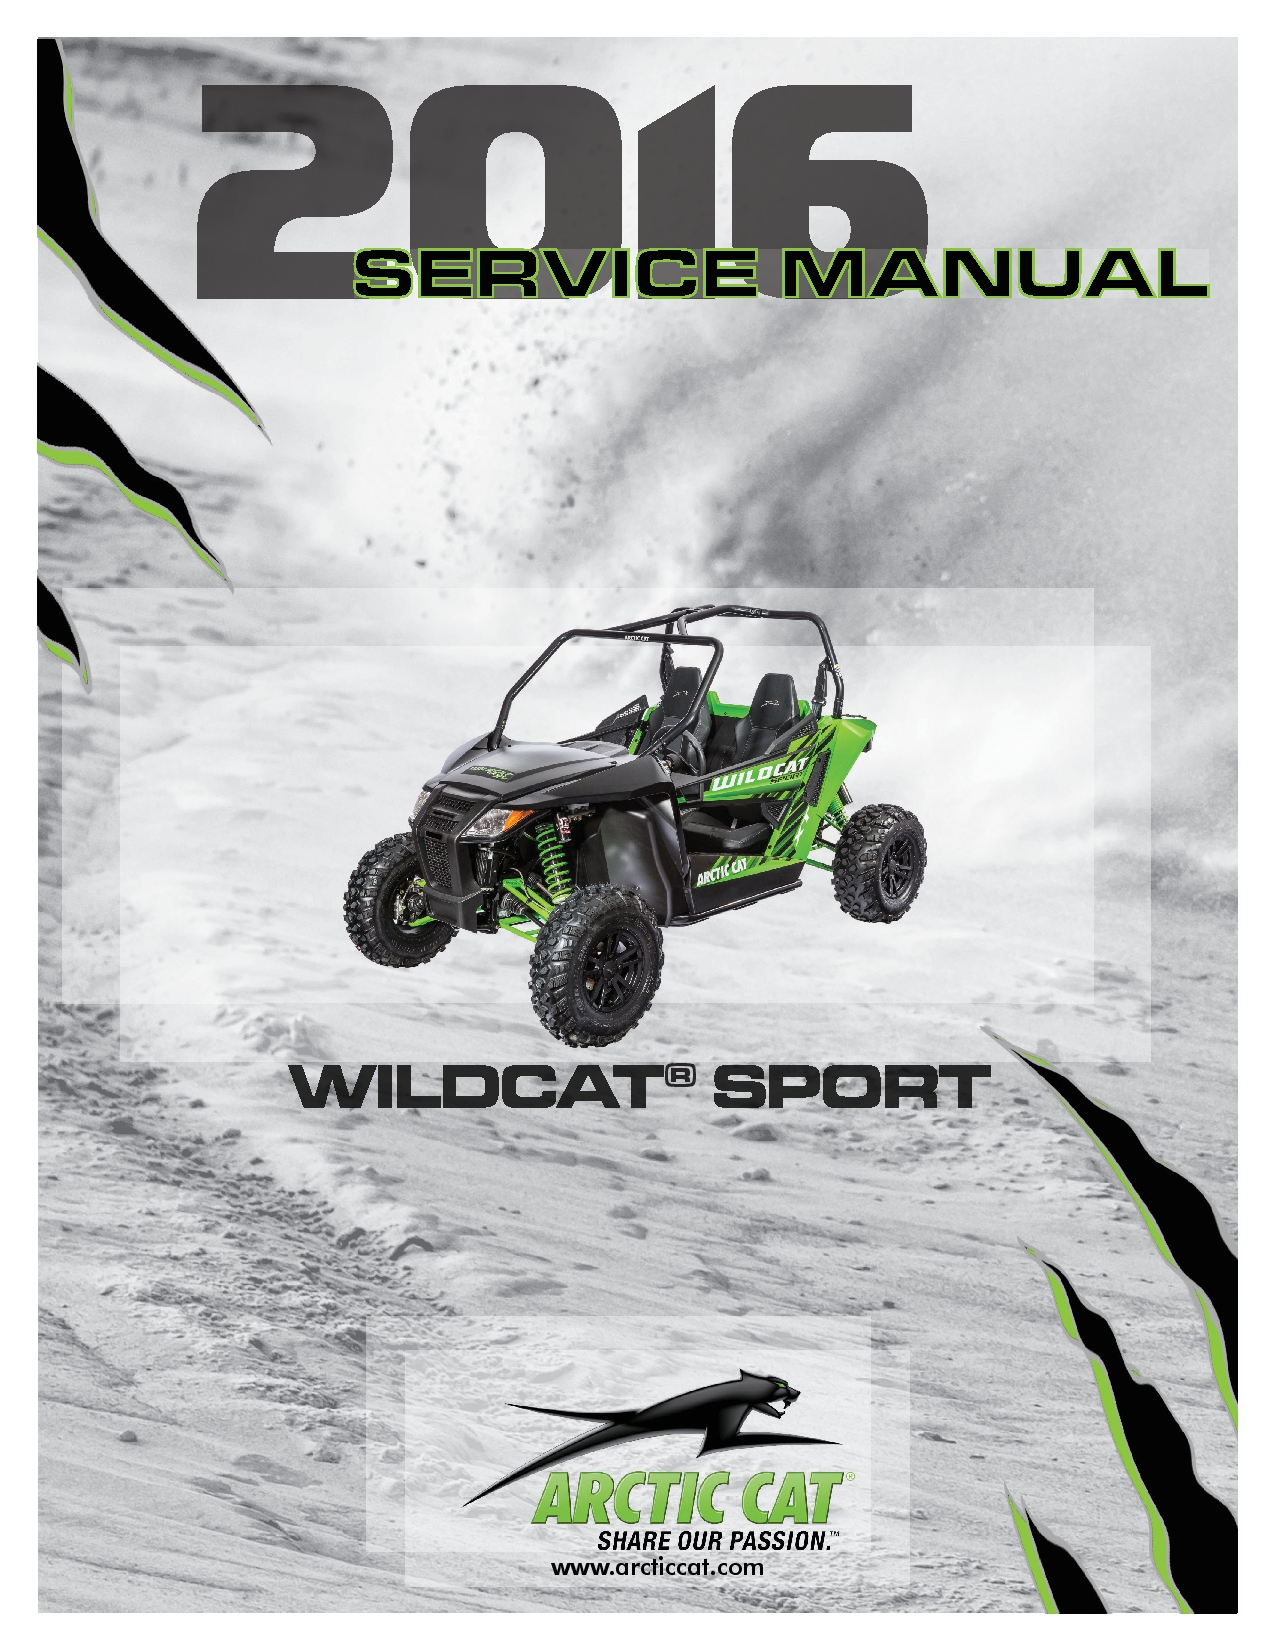 2016 cbr 250rr workshop manual